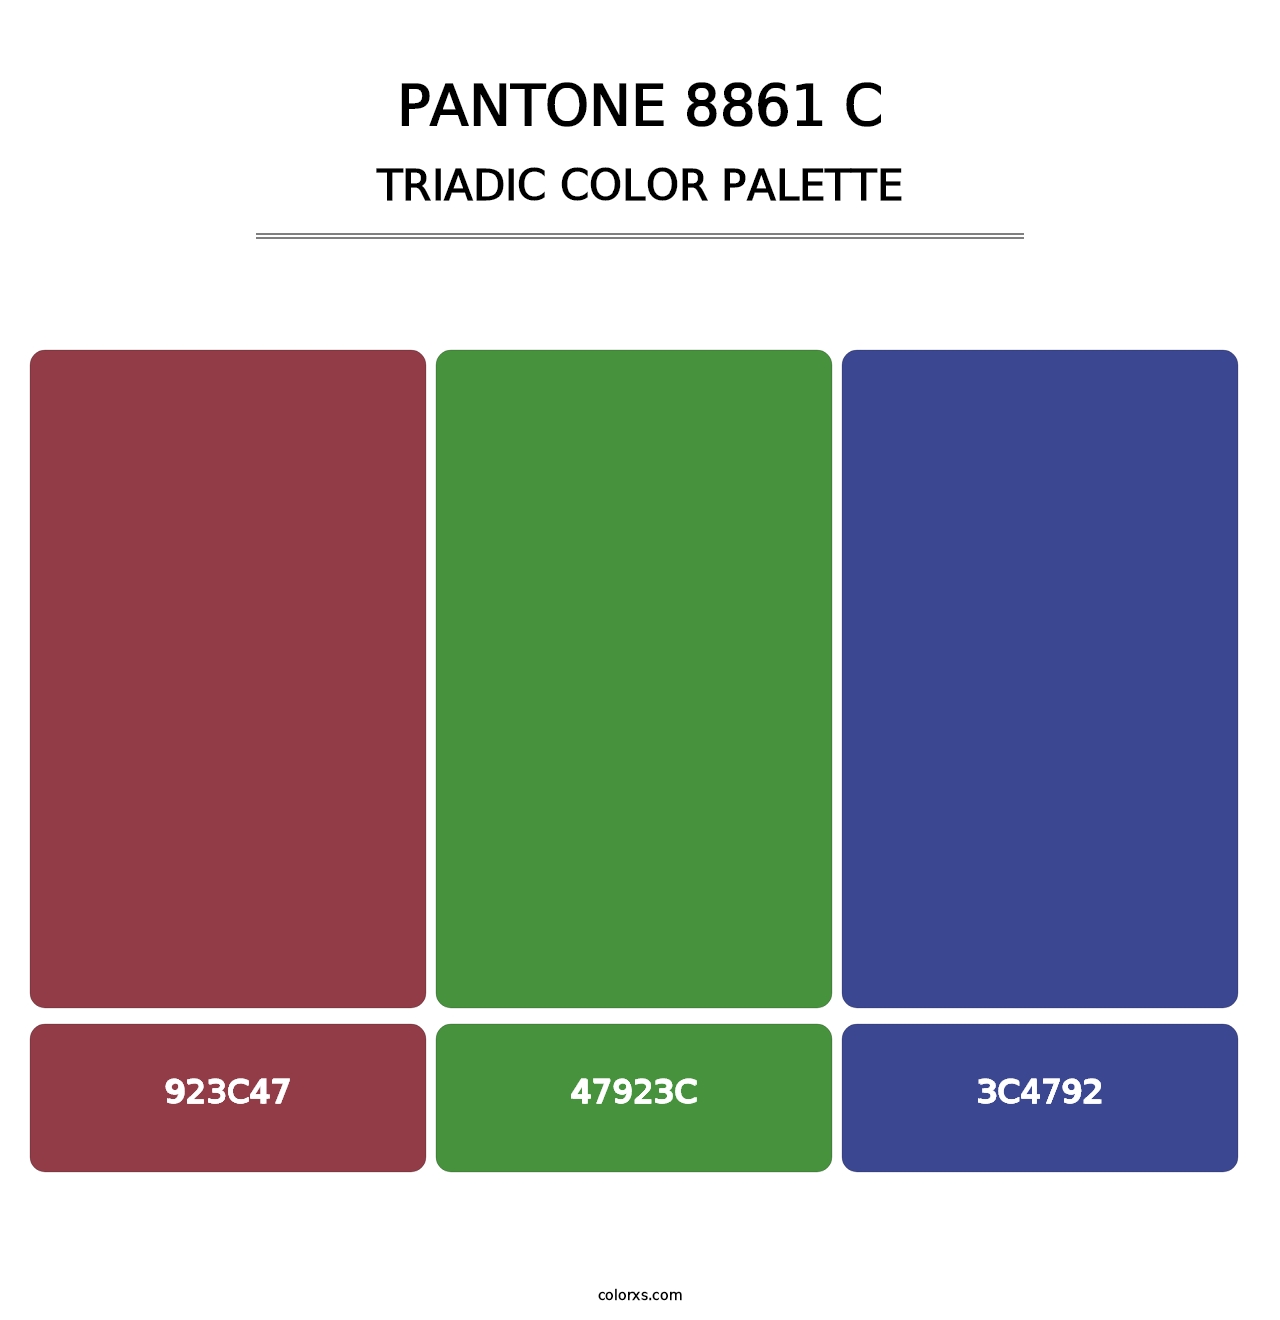 PANTONE 8861 C - Triadic Color Palette